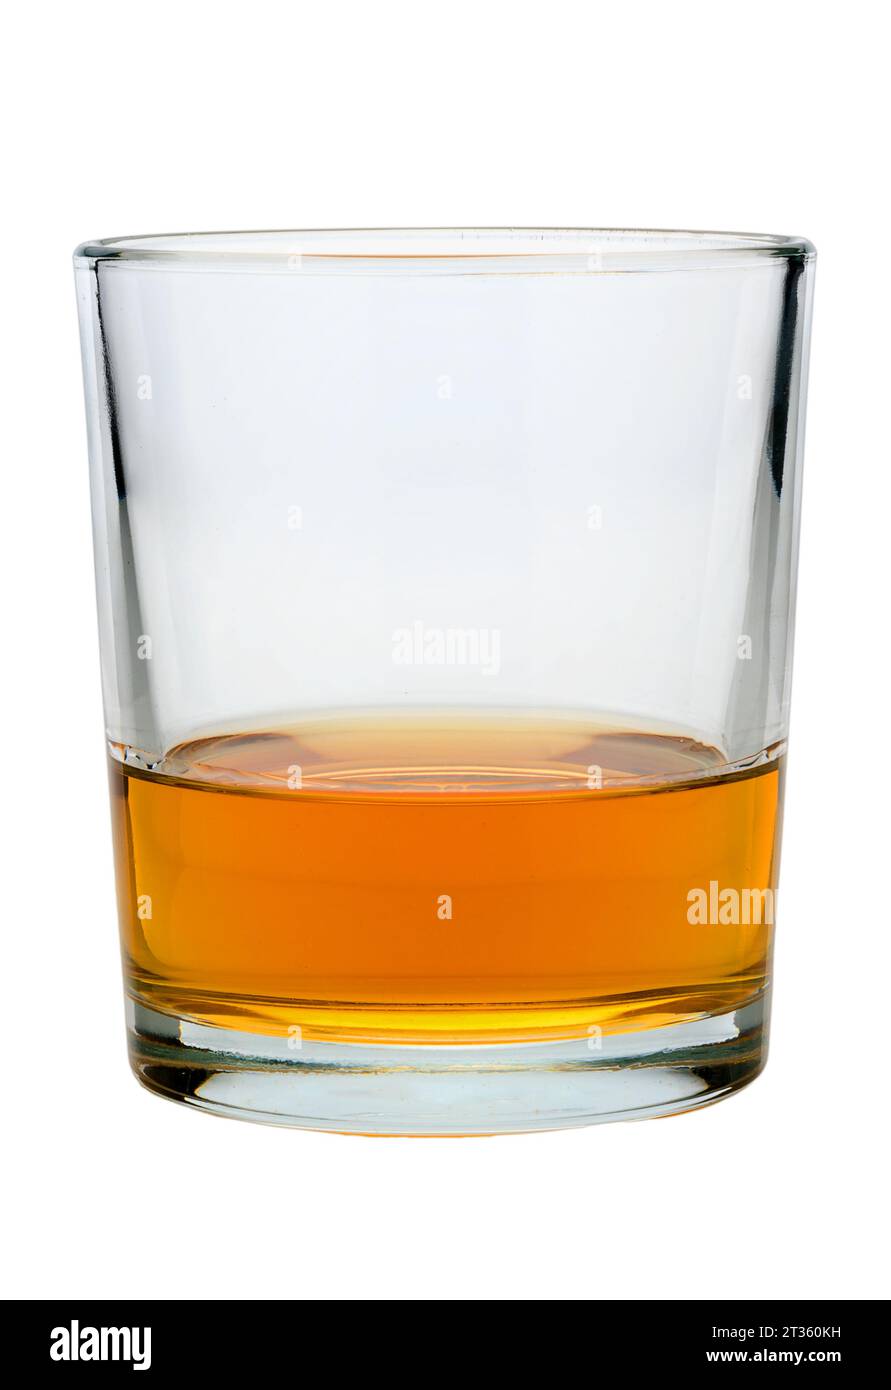 Verre de whisky ou whisky ou bourbon Kentucky isolé sur blanc avec chemin de détourage Banque D'Images